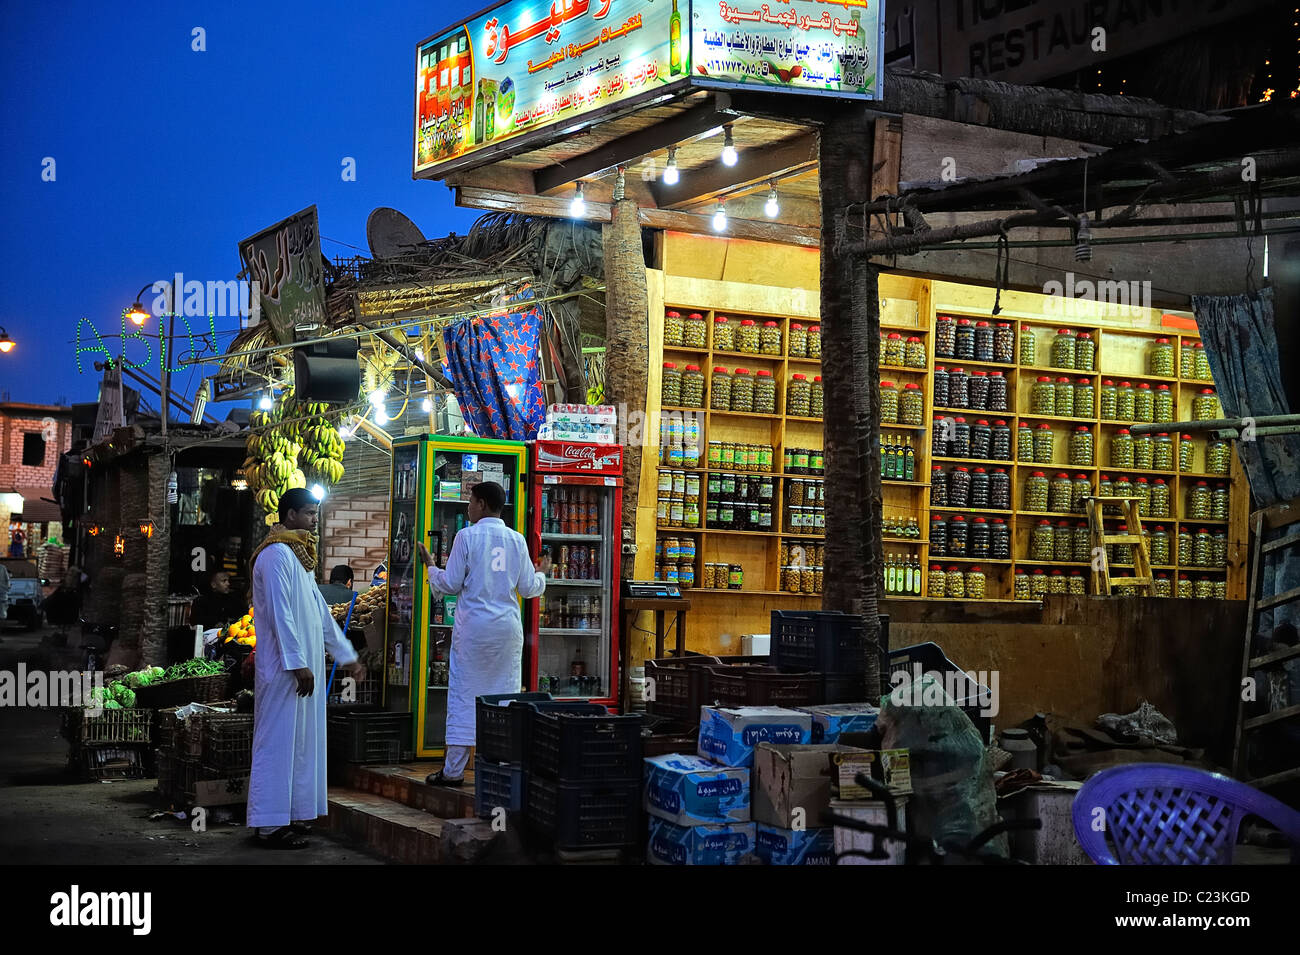 Magasin d'illuminés de nuit dans la ville de Siwa, désert de l'ouest, l'Egypte Banque D'Images